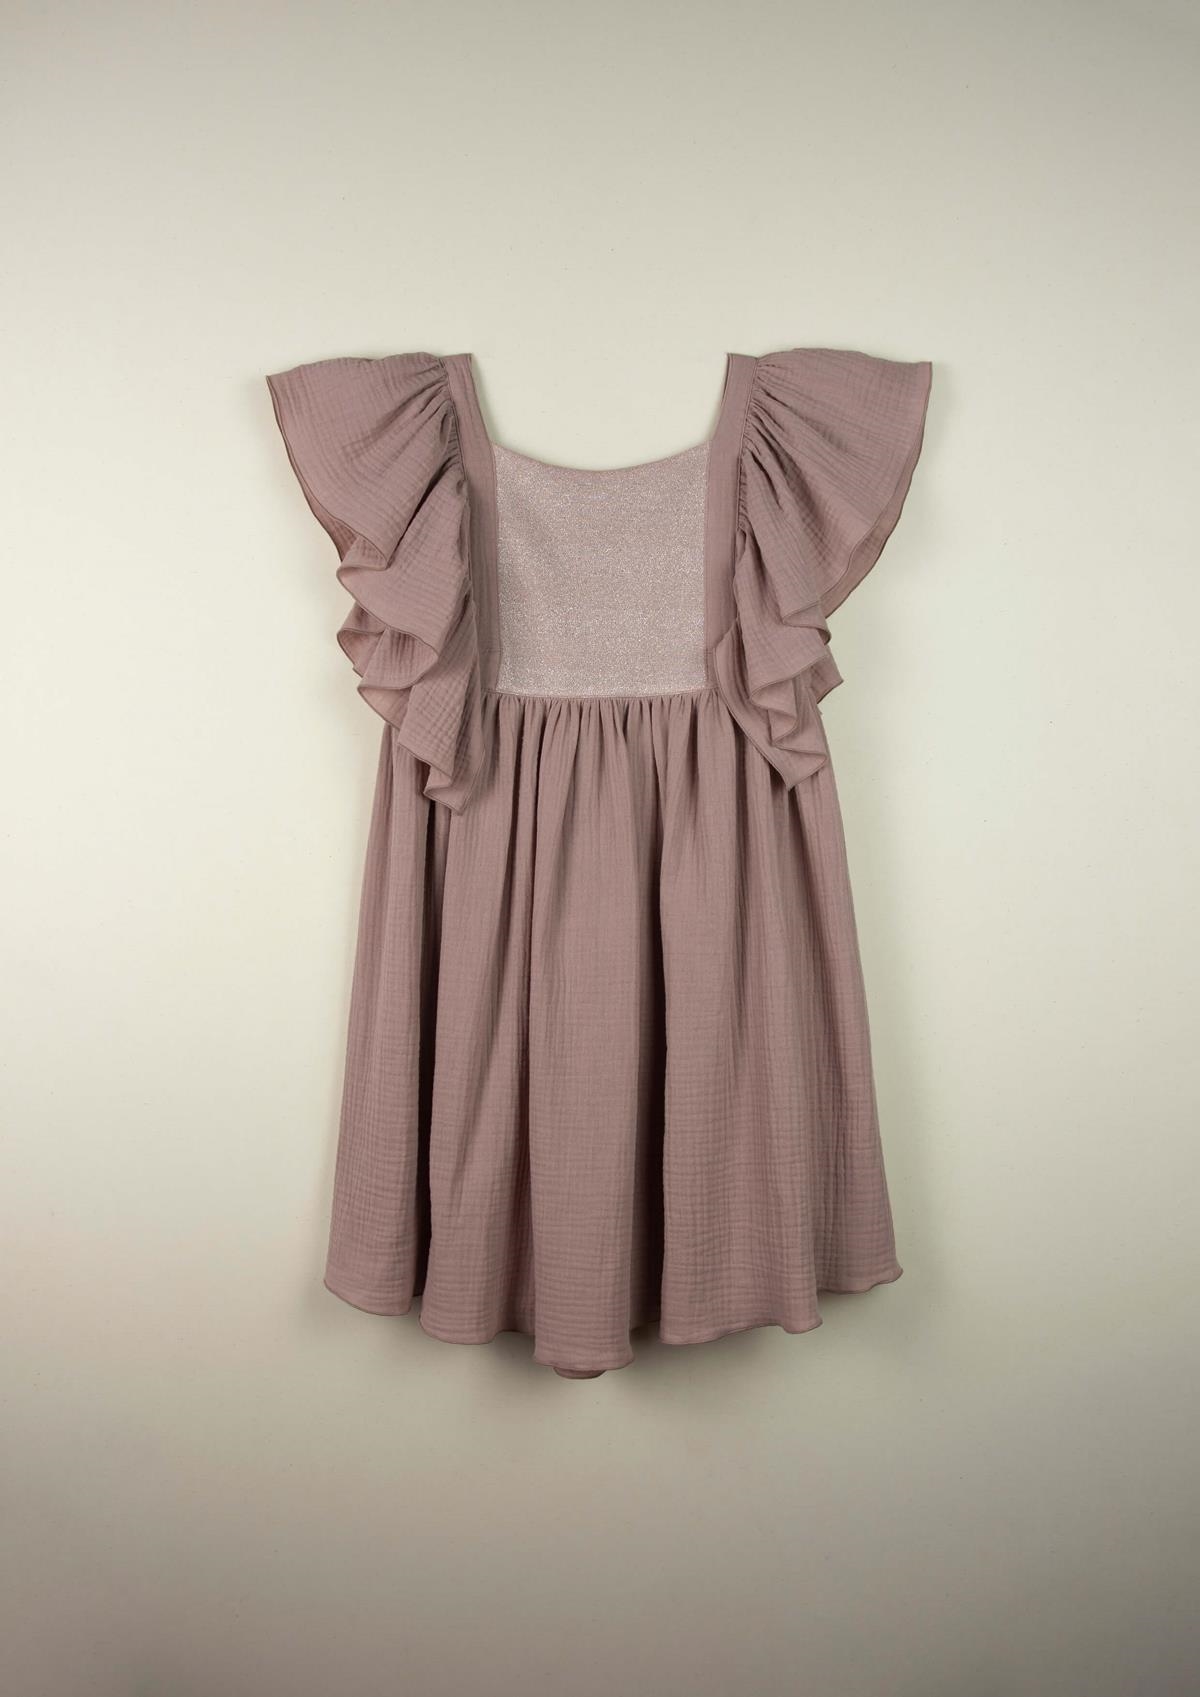 Mod.33.1 Pink bib dress | SS21Mod.33.1 Pink bib dress | 1